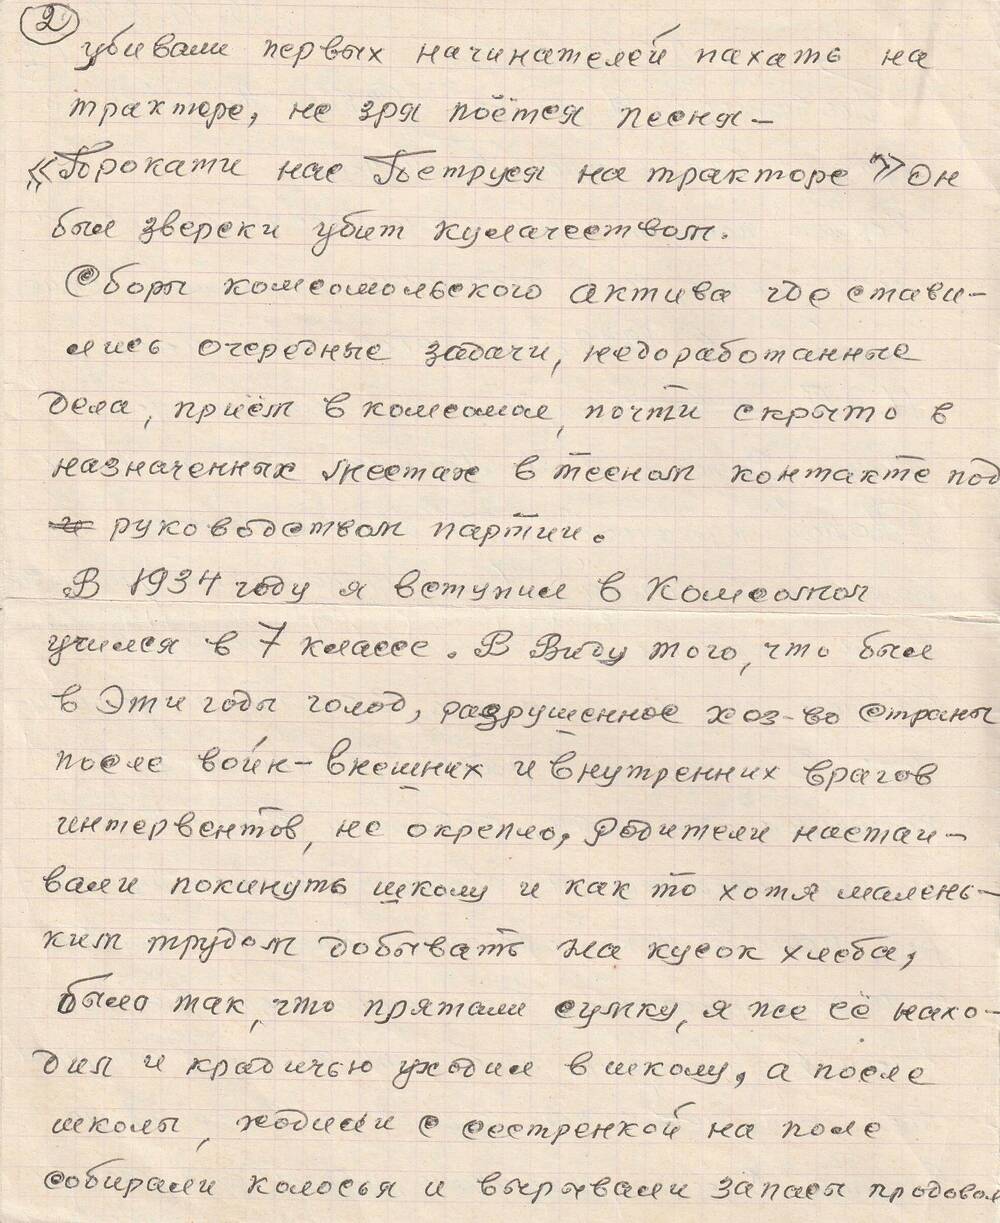 Конспект речи Моисеева Михаила Ильича, ветерана Великой Отечественной войны перед комсомольцами о своей комсомольской юности, о войне.